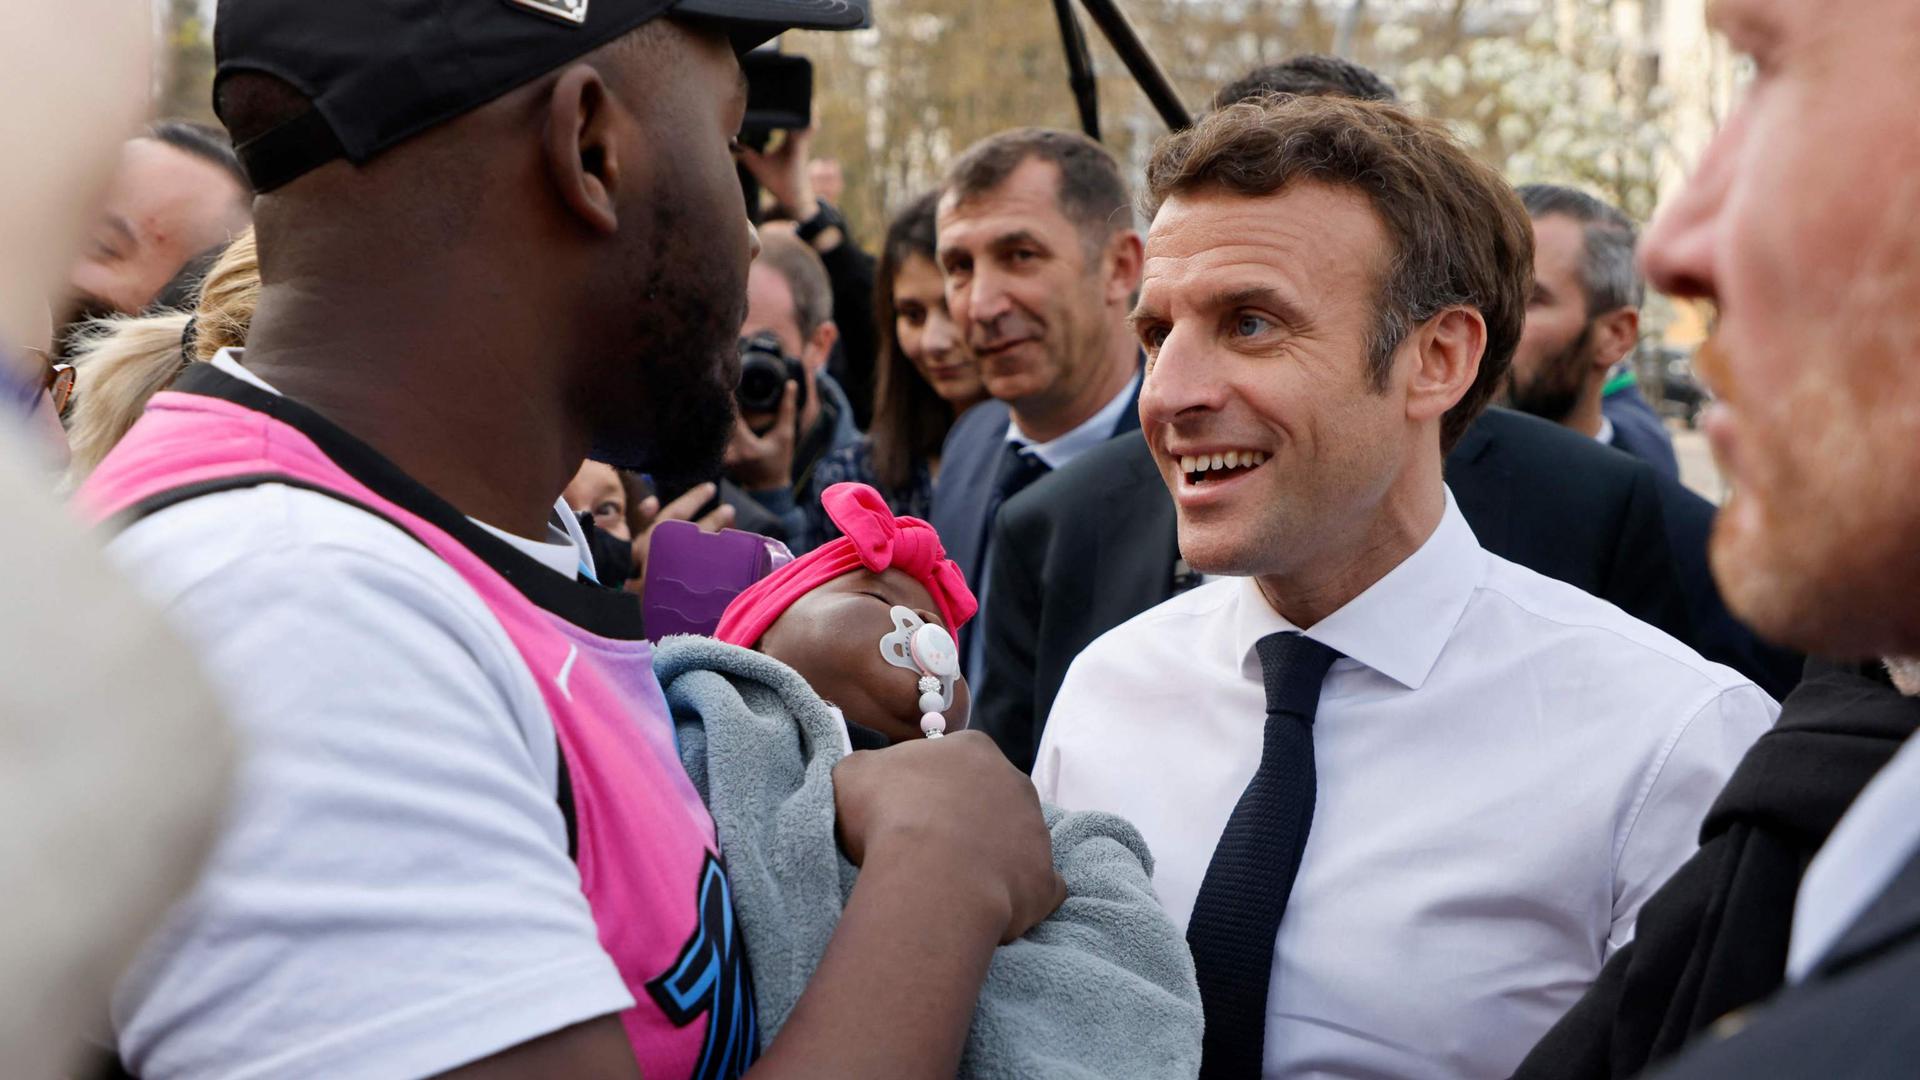 Emmanuel Macron, candidat de La République en marche (LREM) à la présidentielle, fait campagne à Dijon.